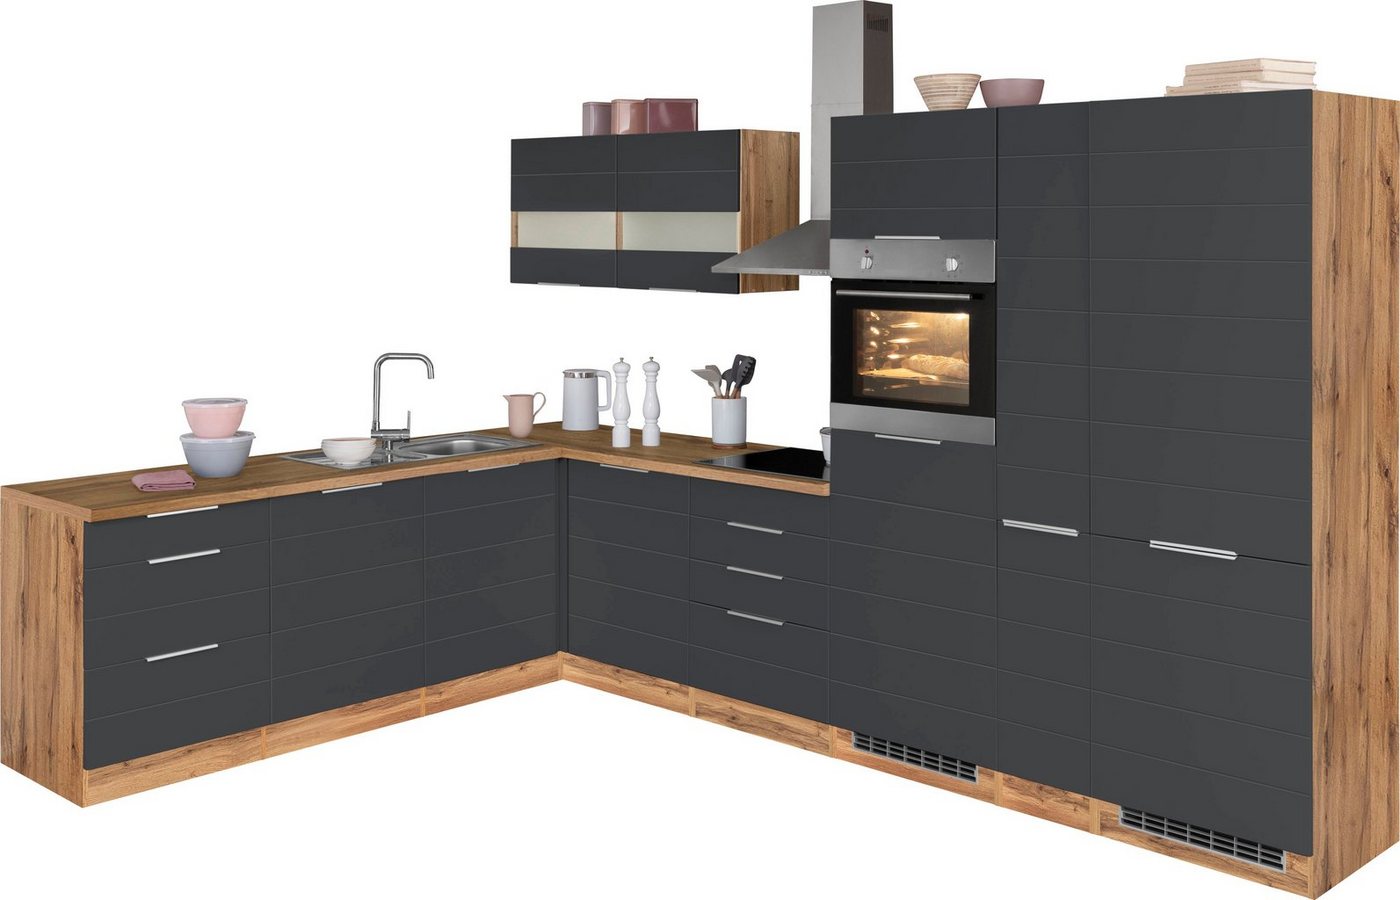 HELD MÖBEL Küche Luhe, Stellbreite 240×330 cm, wahlweise mit oder ohne E-Geräten, MDF-Fronten grau